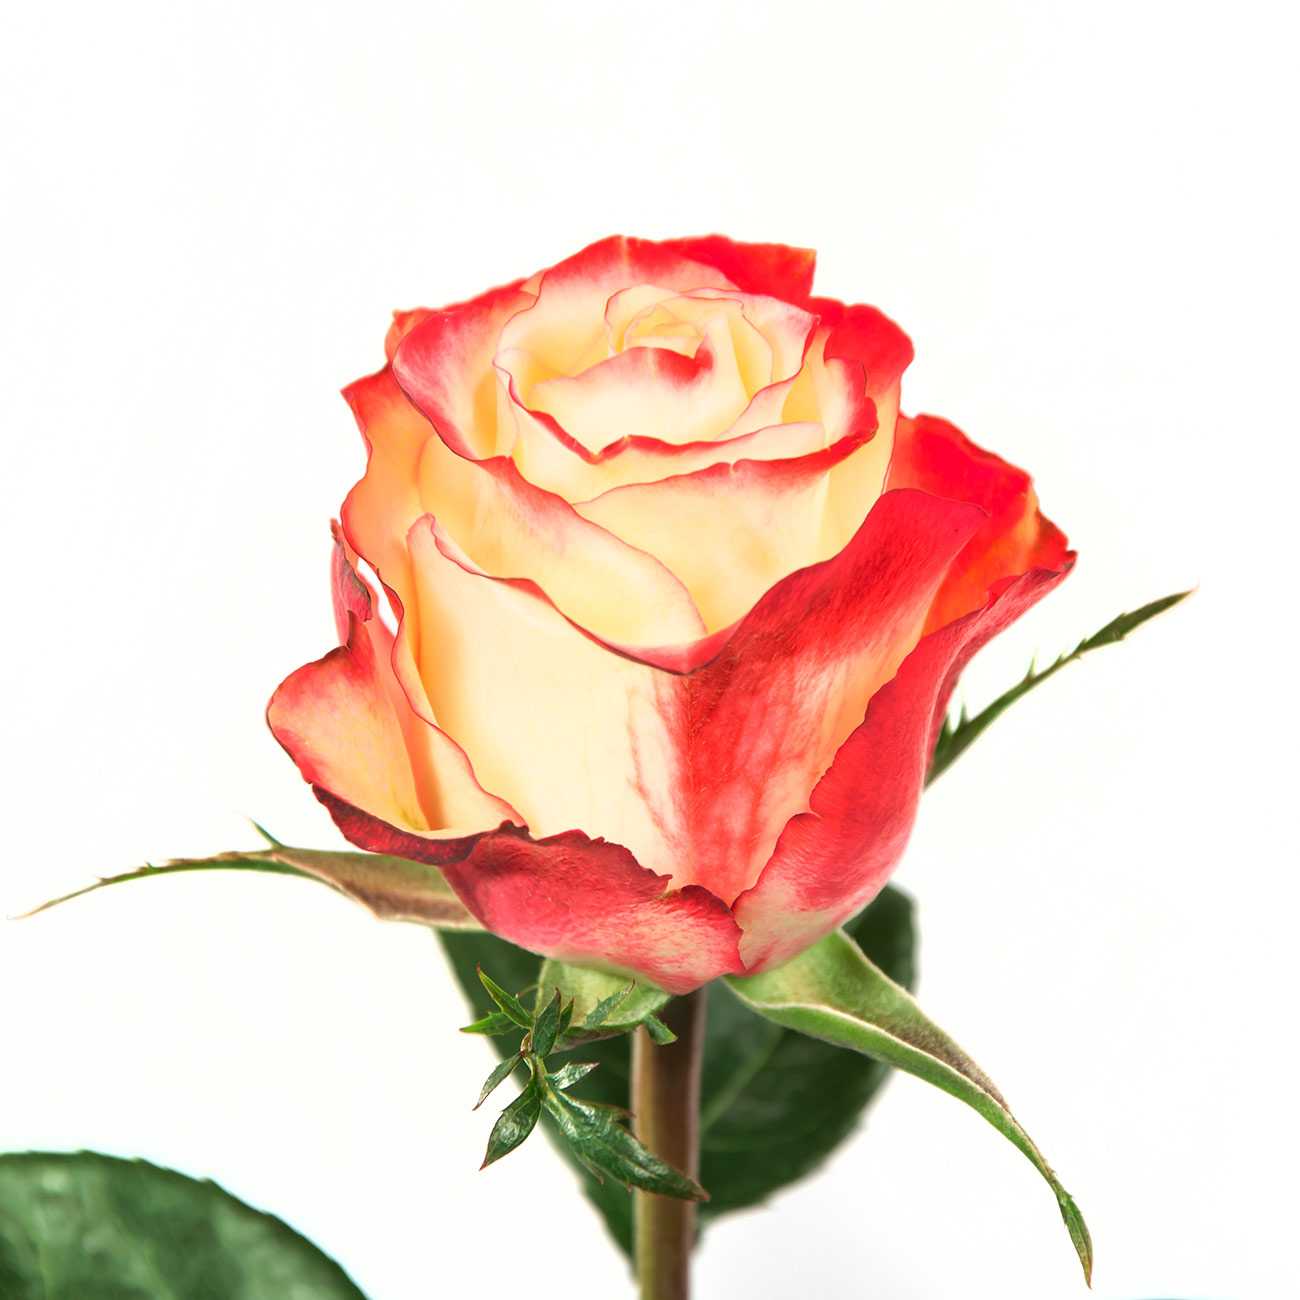 О розе first lady: описание и характеристики сорта розы первая леди